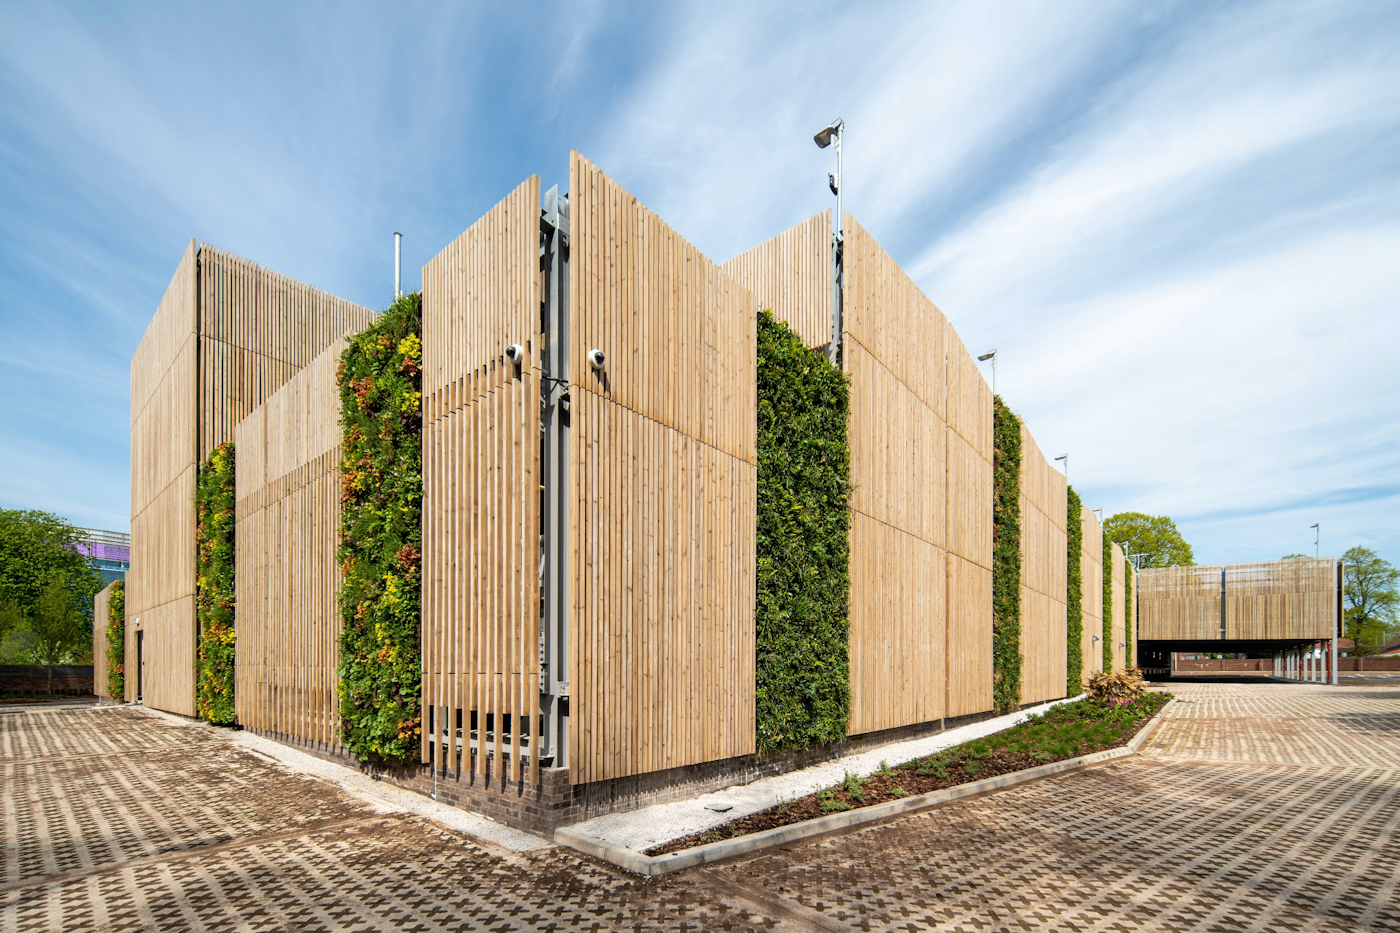 Etagenparkhaus mit Holz- und Pflanzenfassade